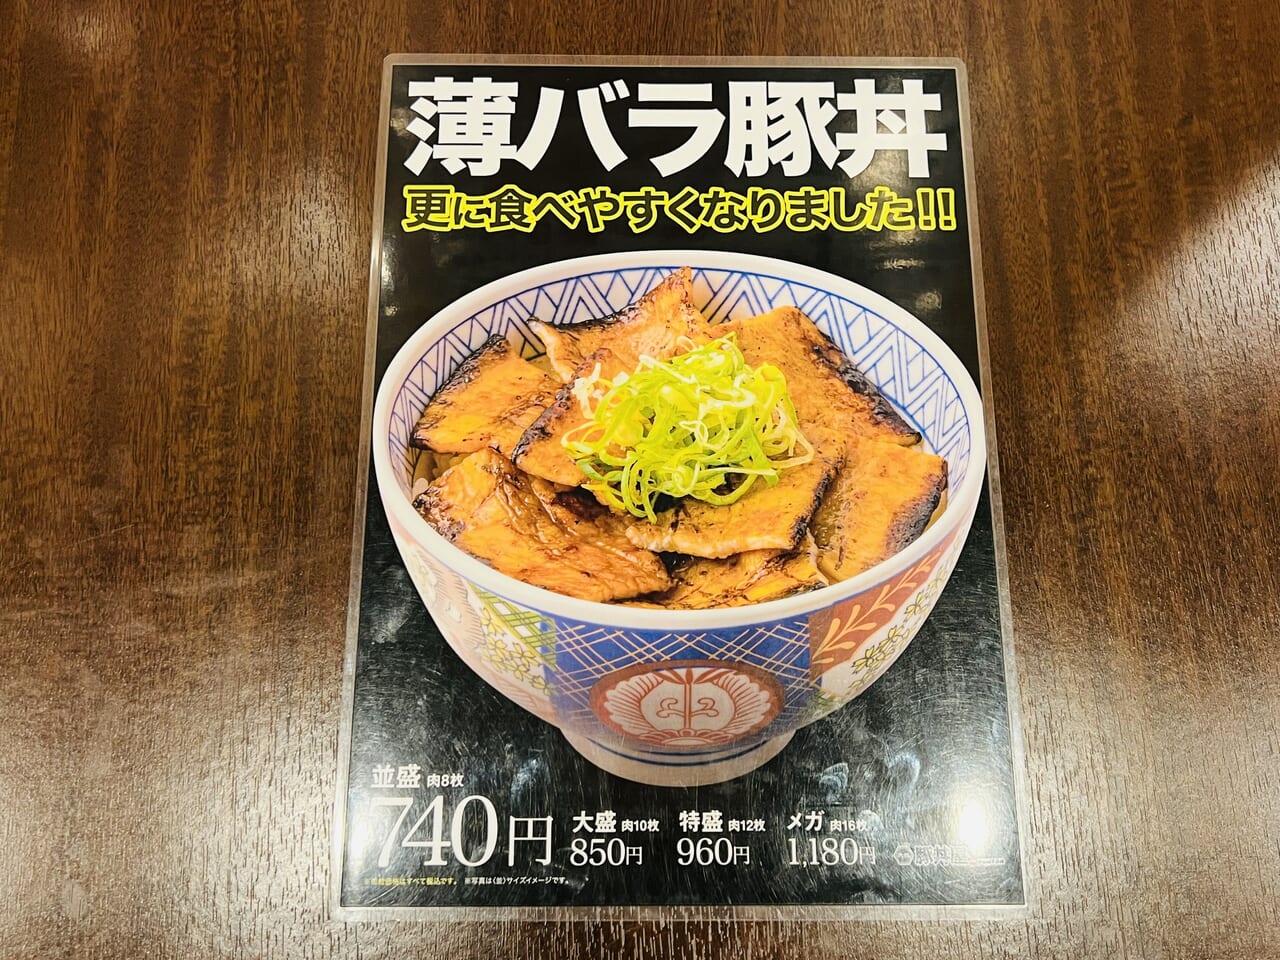 「元祖豚丼屋 TONTON 県庁前店」のメニュー